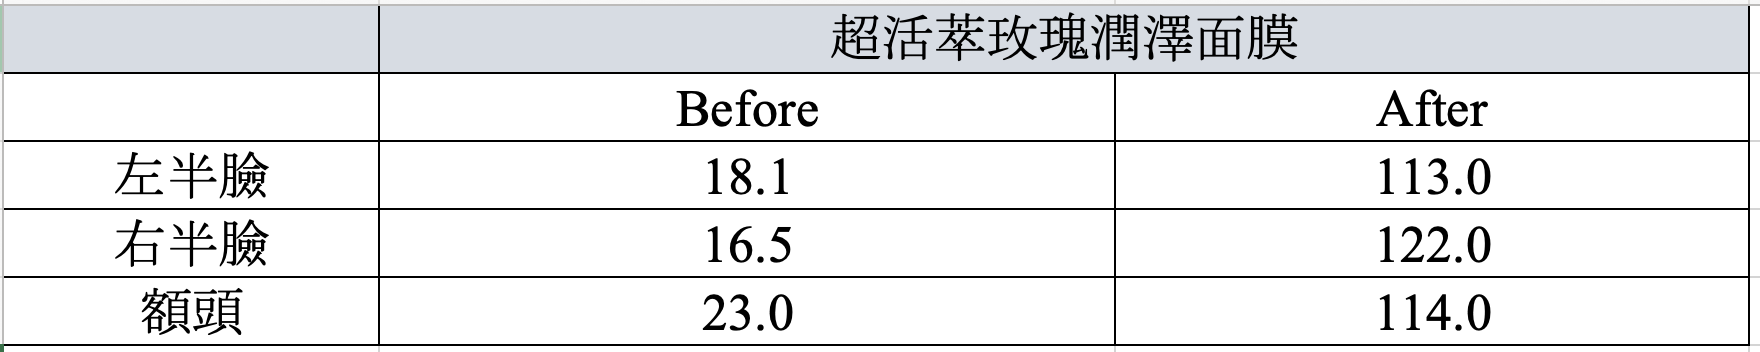 台灣小農樹玫瑰面膜絕妙潤澤力！實測保濕瞬增7倍、乾紋竟減52%